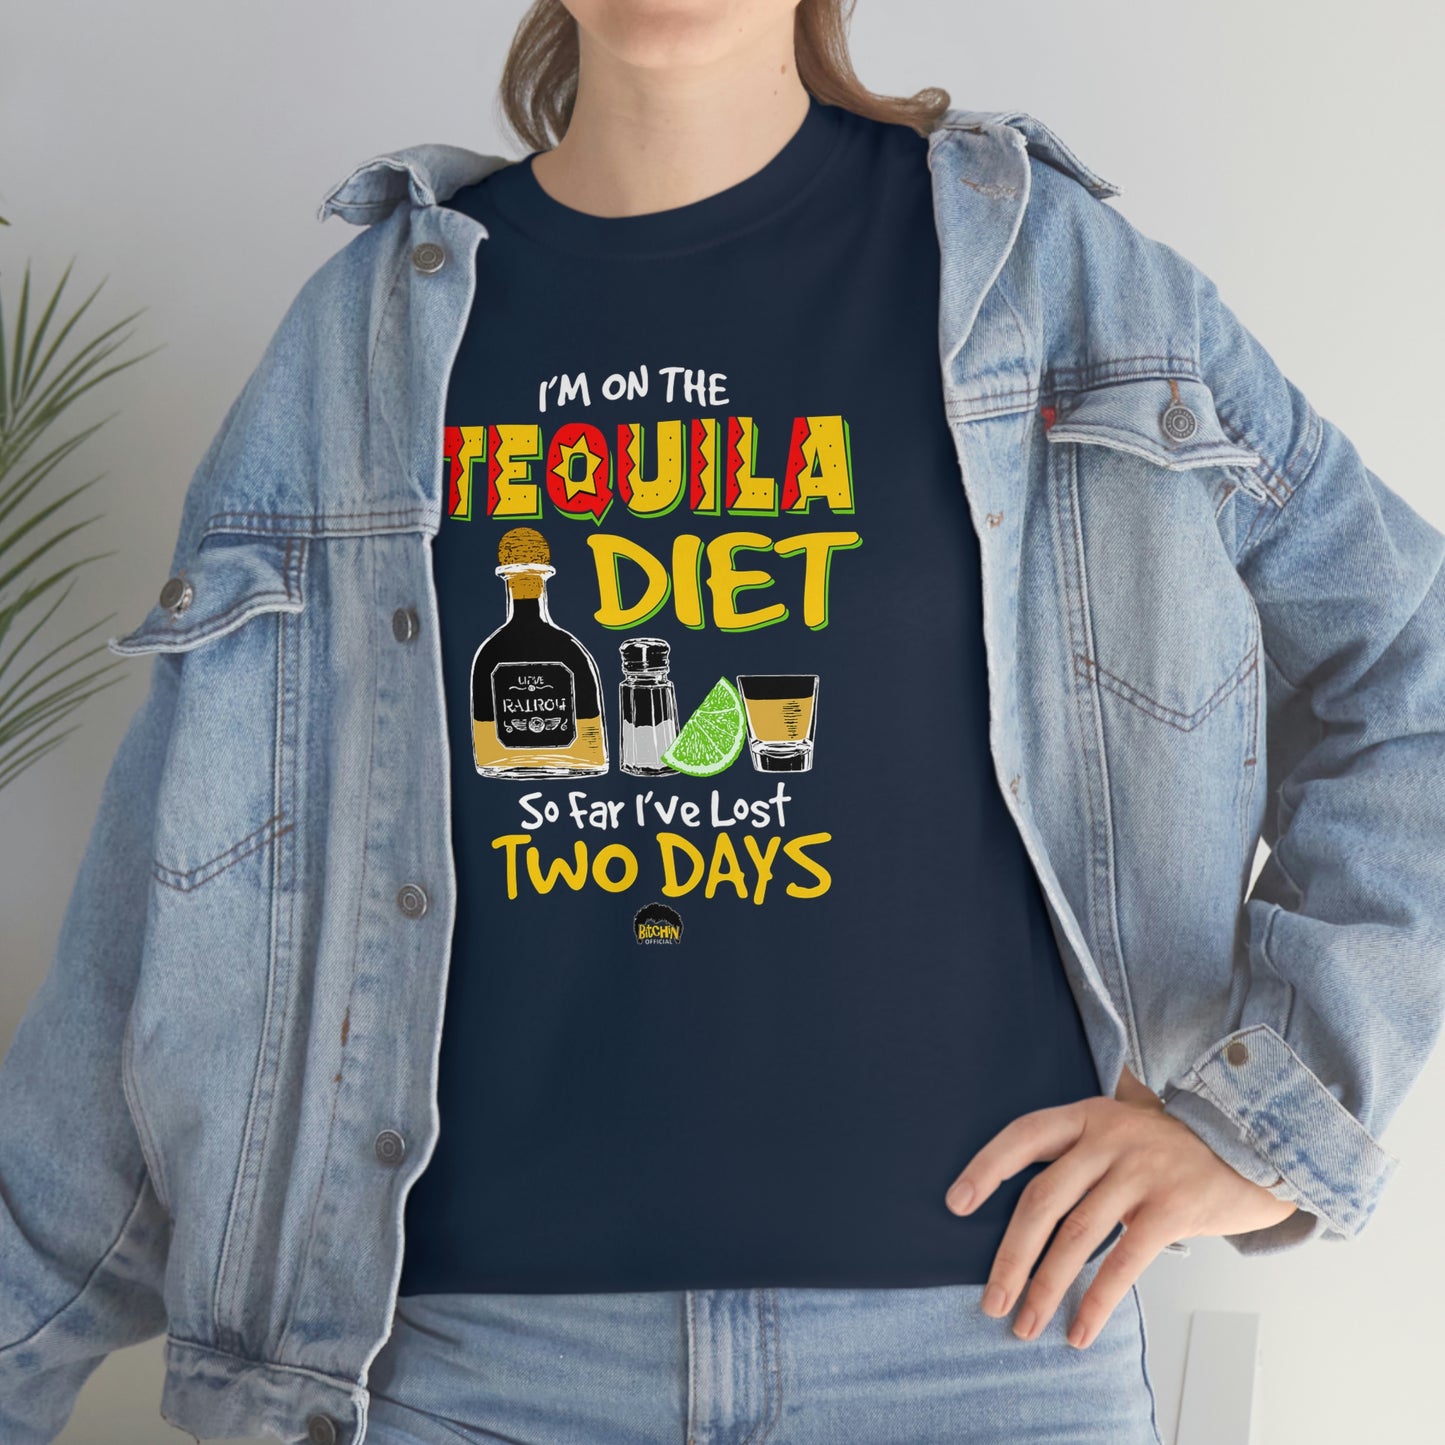 Tequila Diet